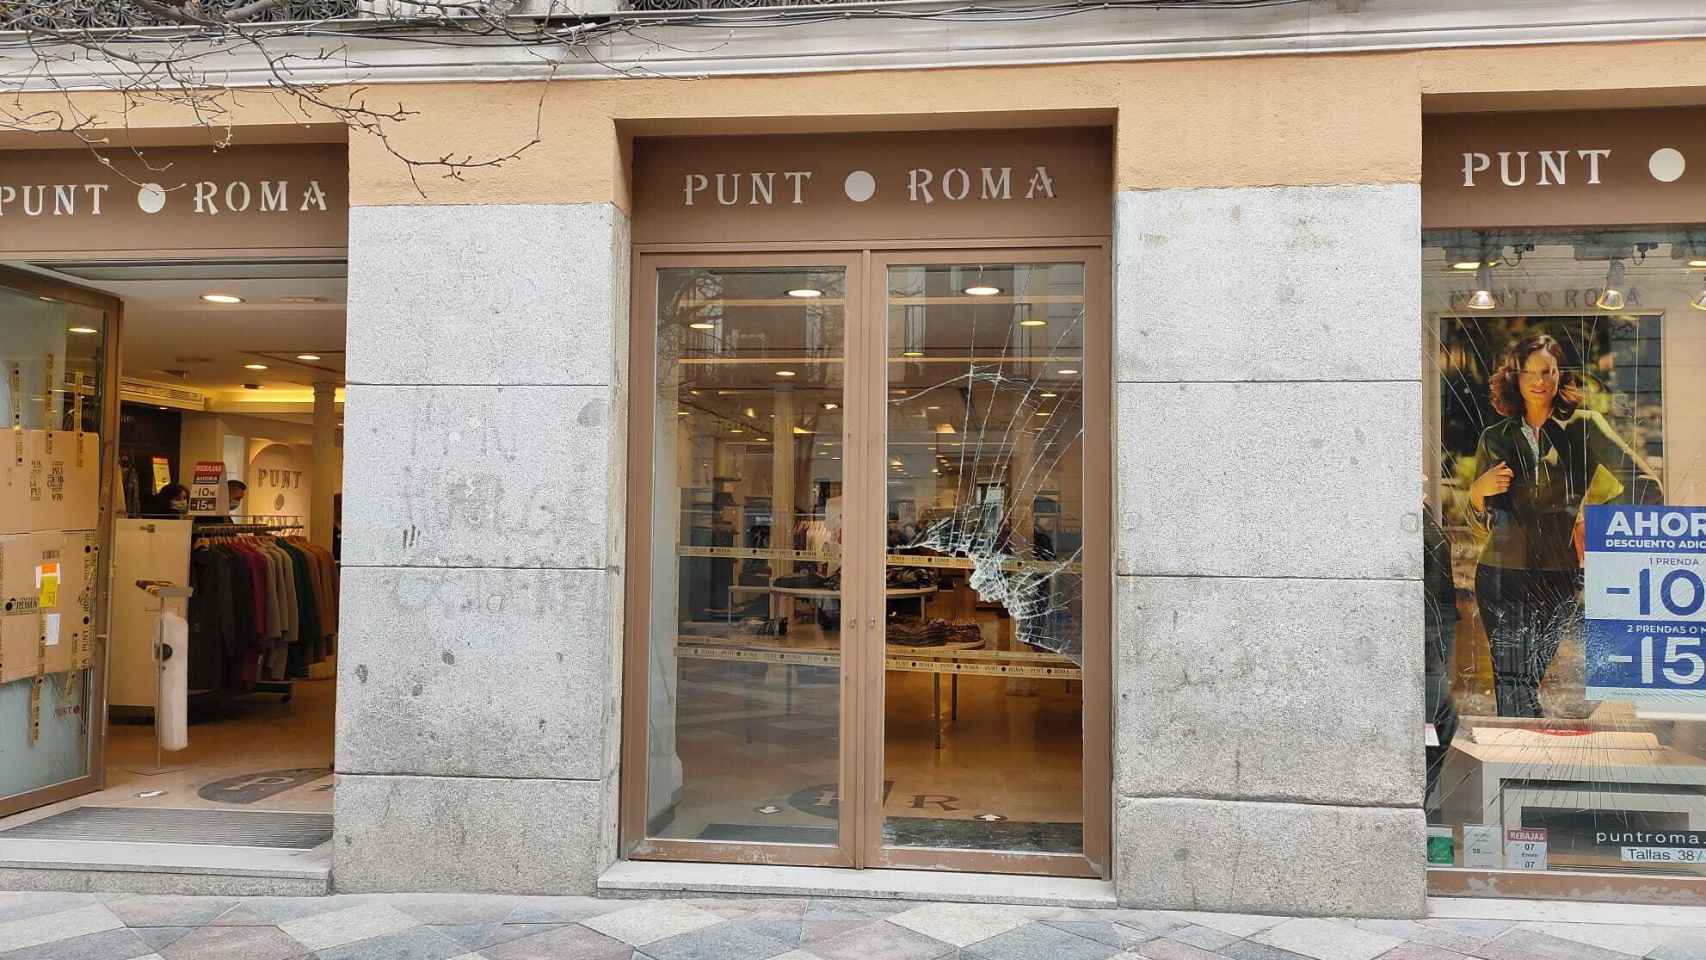 La tienda Punto Roma de la calle Arenal, destrozada tras la manifestación.